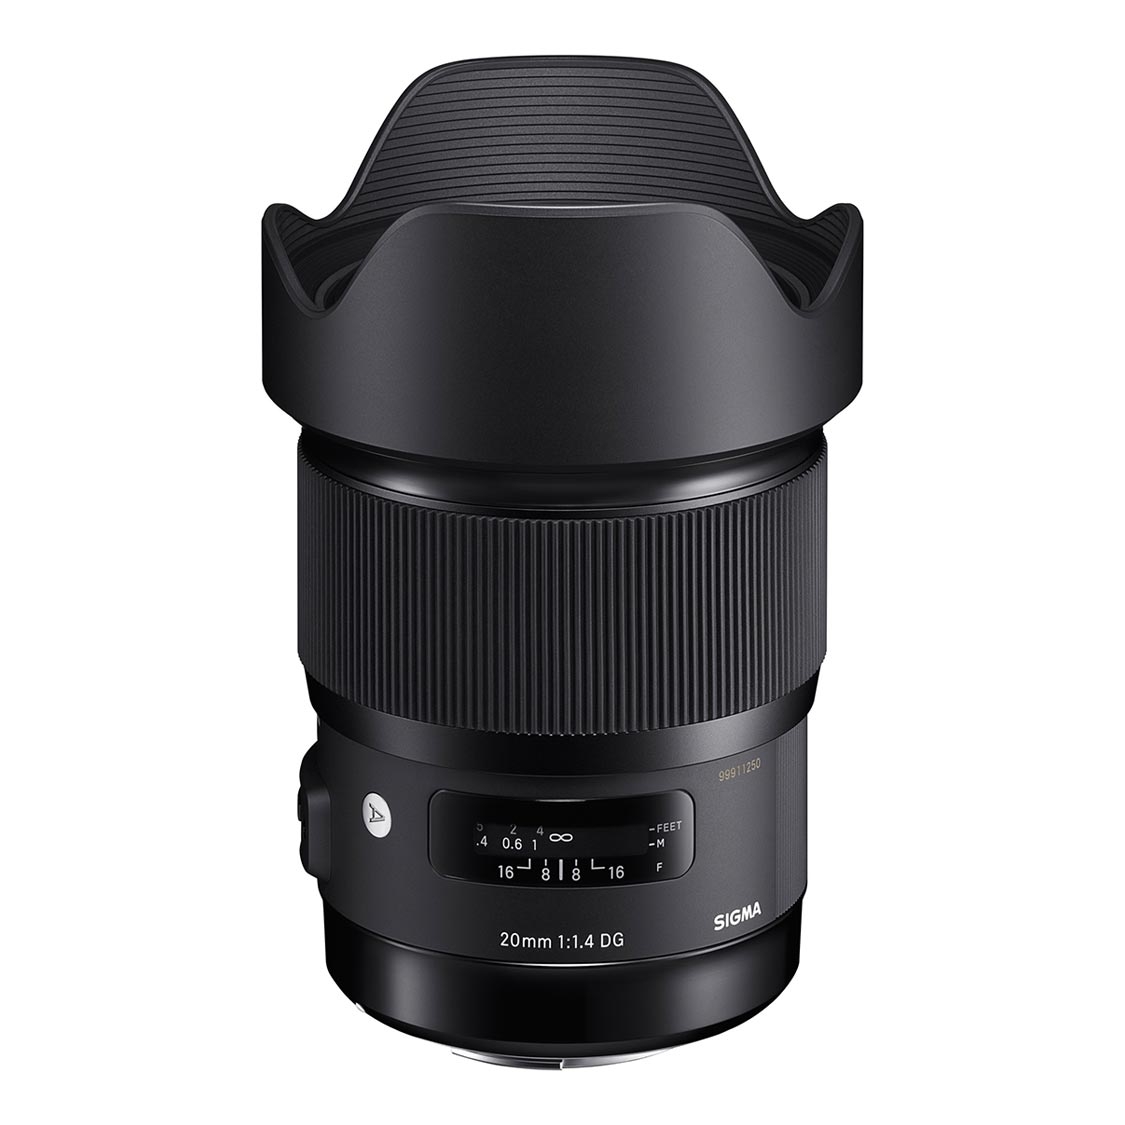 Sigma 20mm f1.4 DG HSM Art Lens for Canon EF Mount